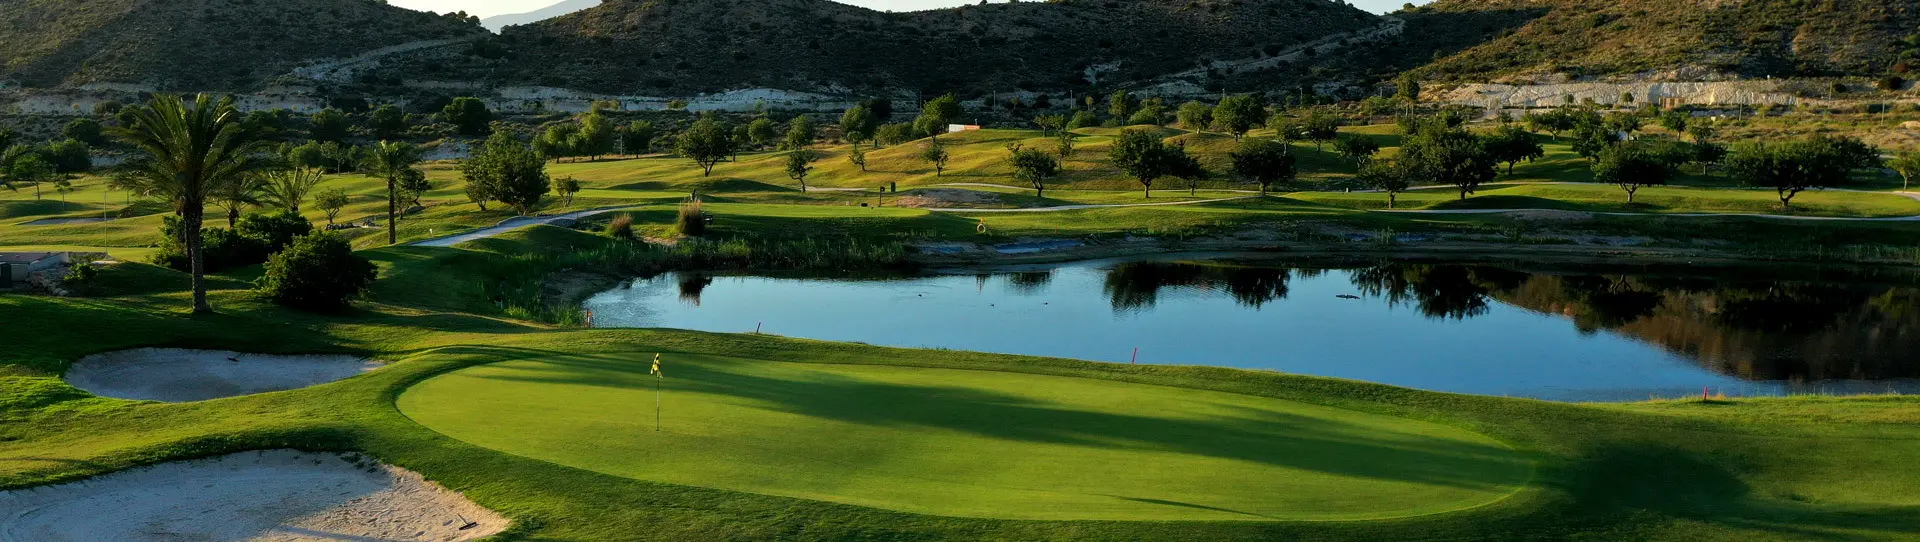 Spain golf courses - Font del Llop Golf Course - Photo 2